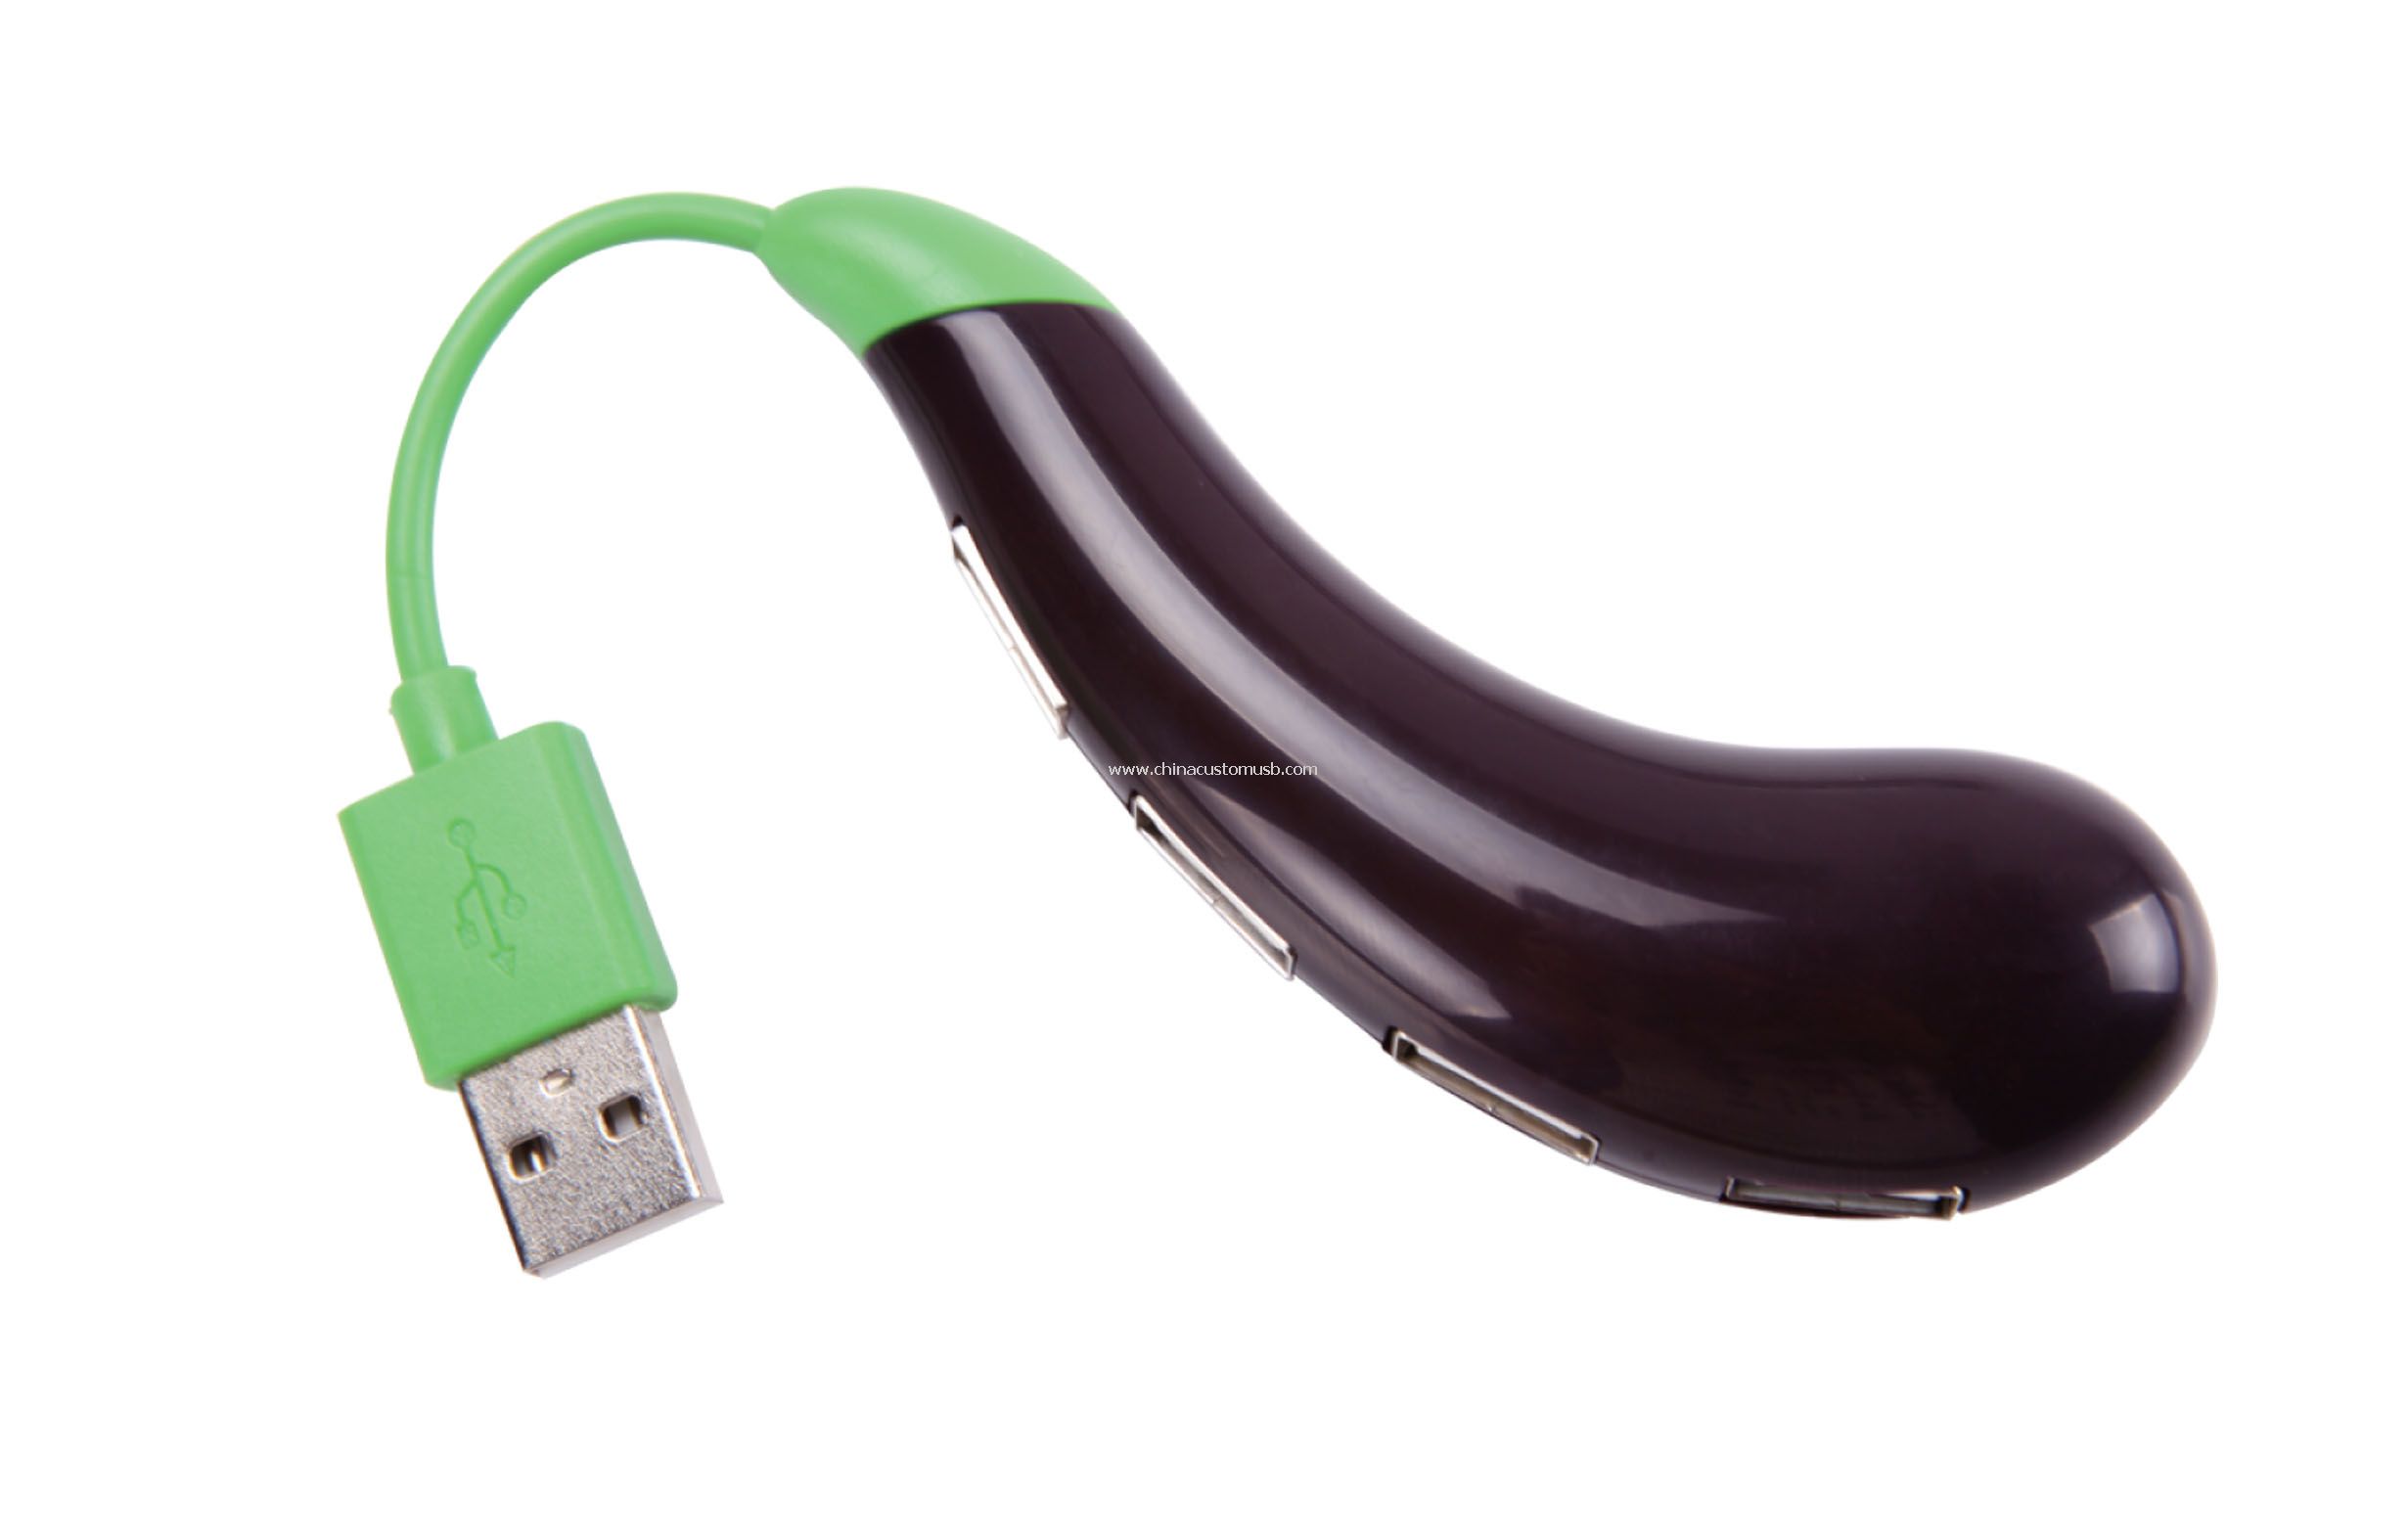 Eggplant USB Hub